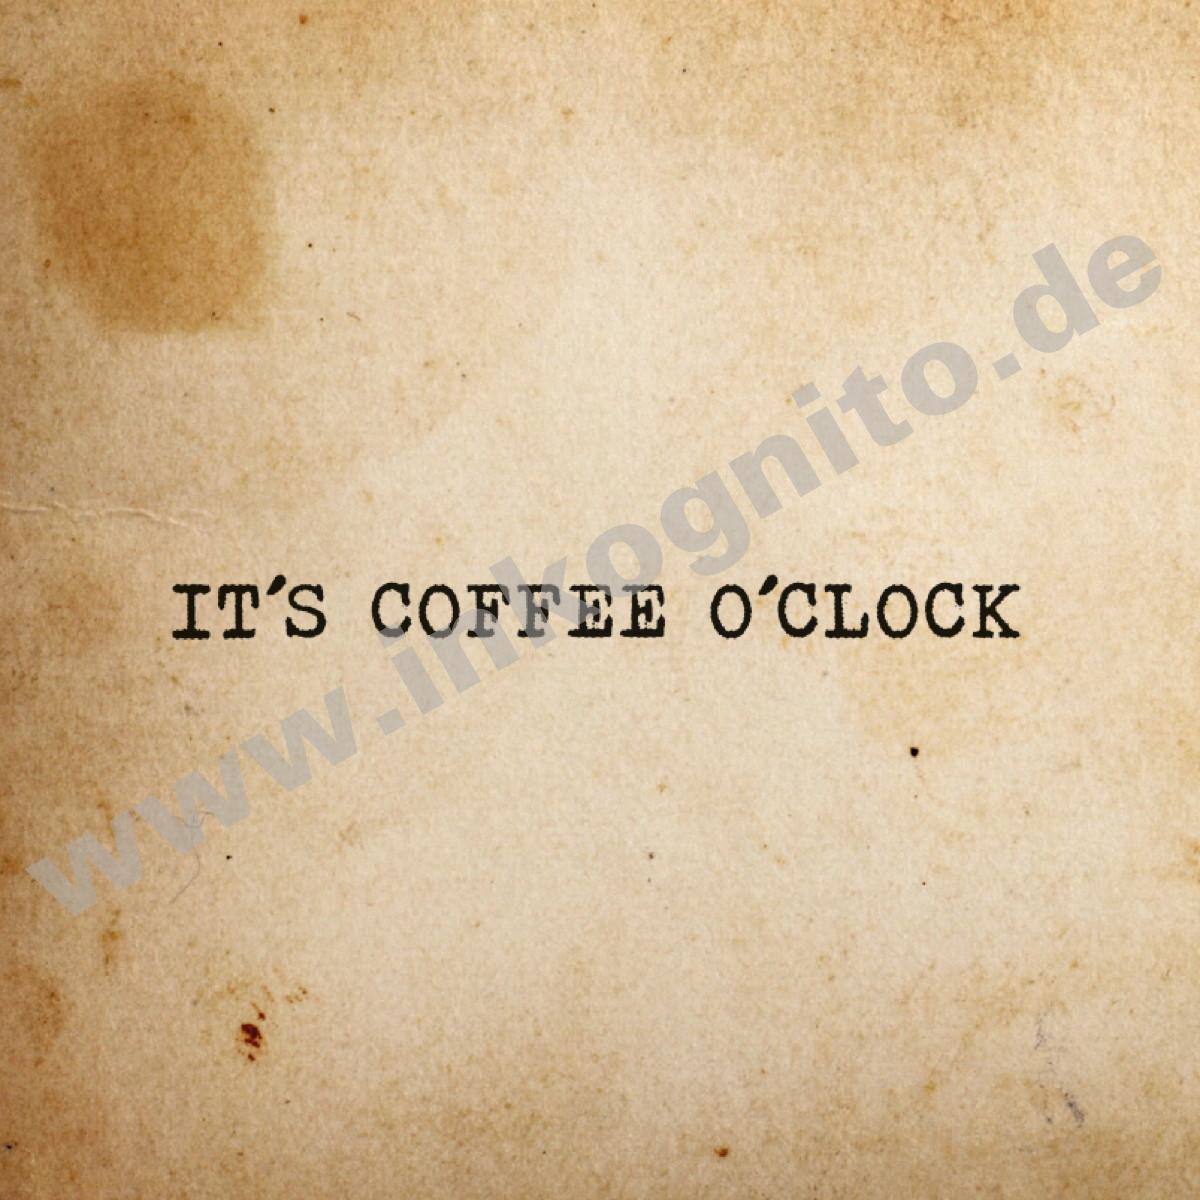 Coffee o'clock